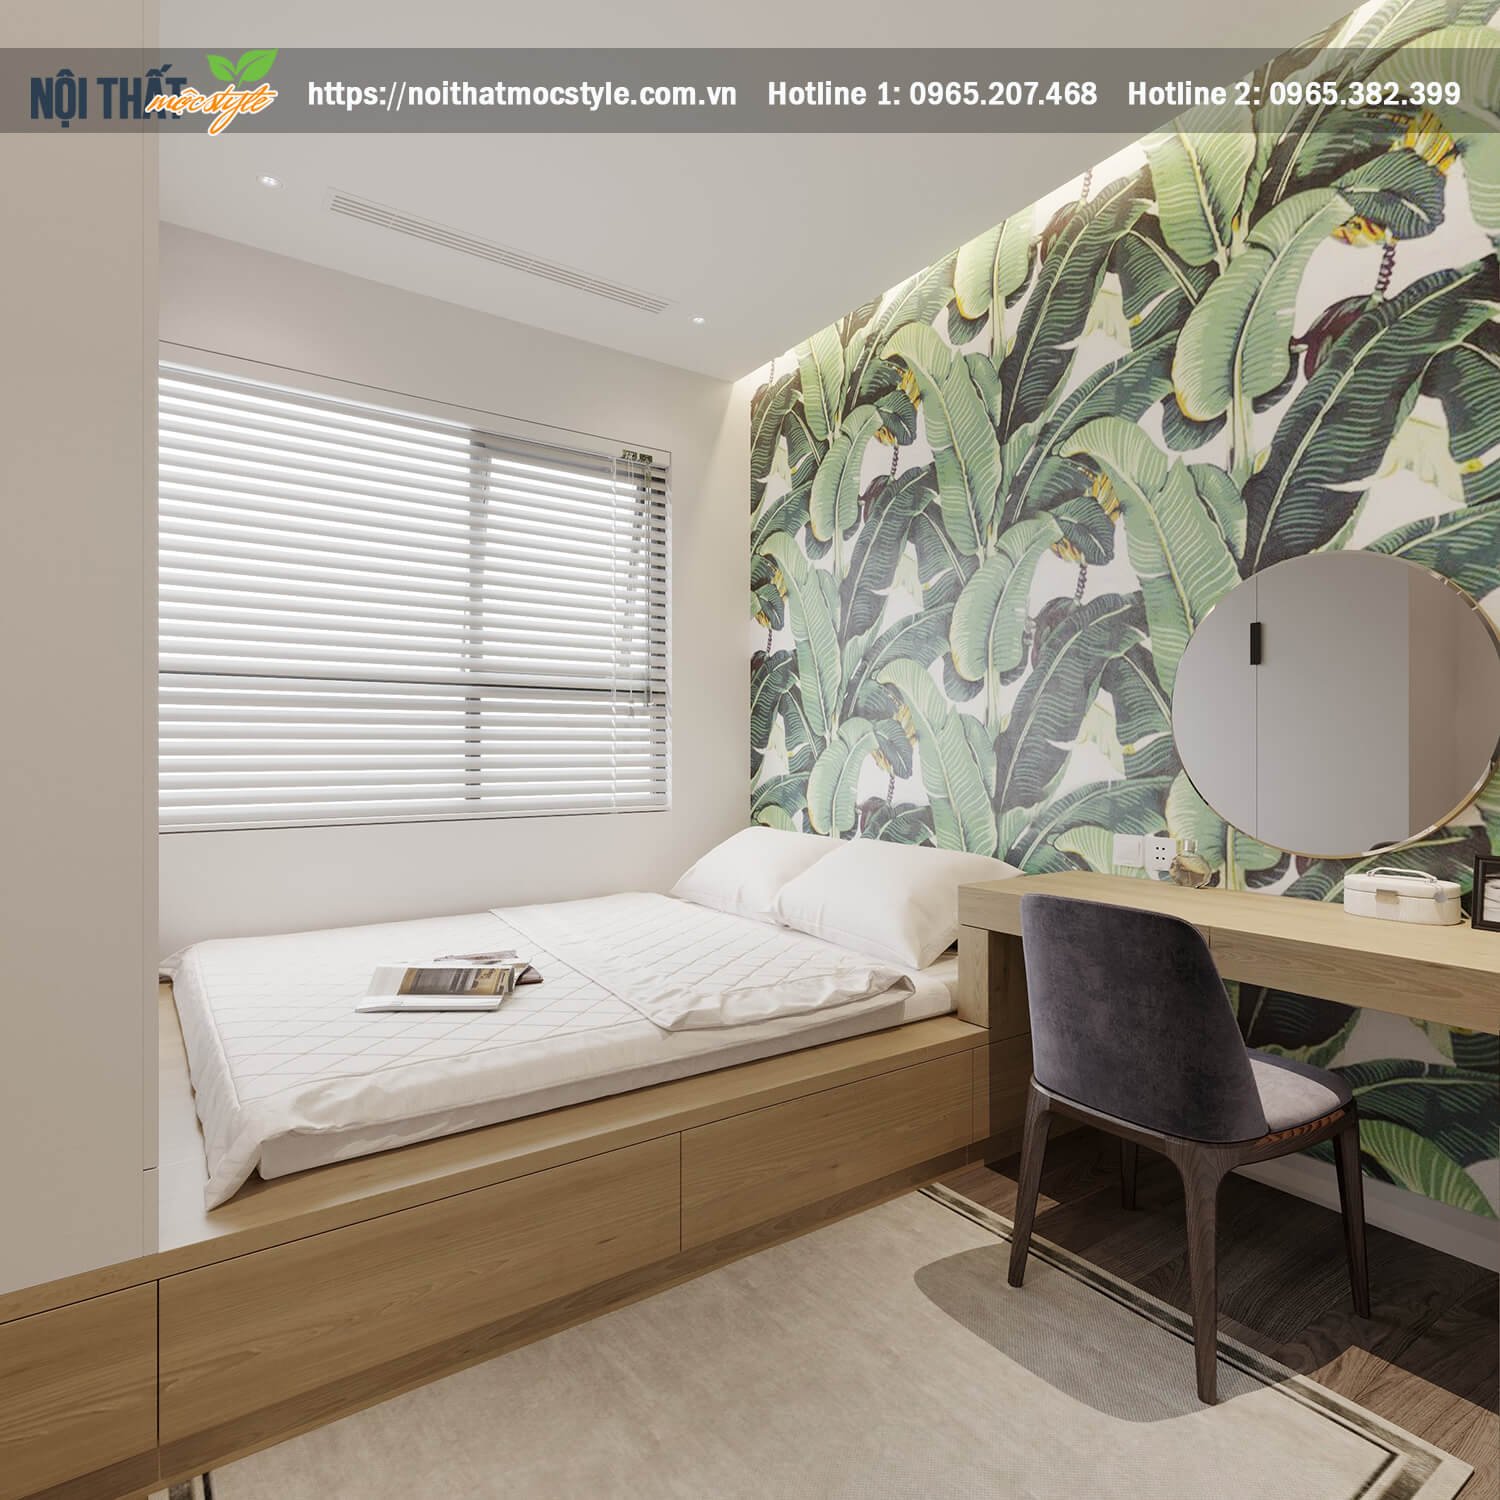 Thiết kế nội thất phòng ngủ đậm chất nhiệt đới - Thiết kế phòng ngủ 9m2 đẹp